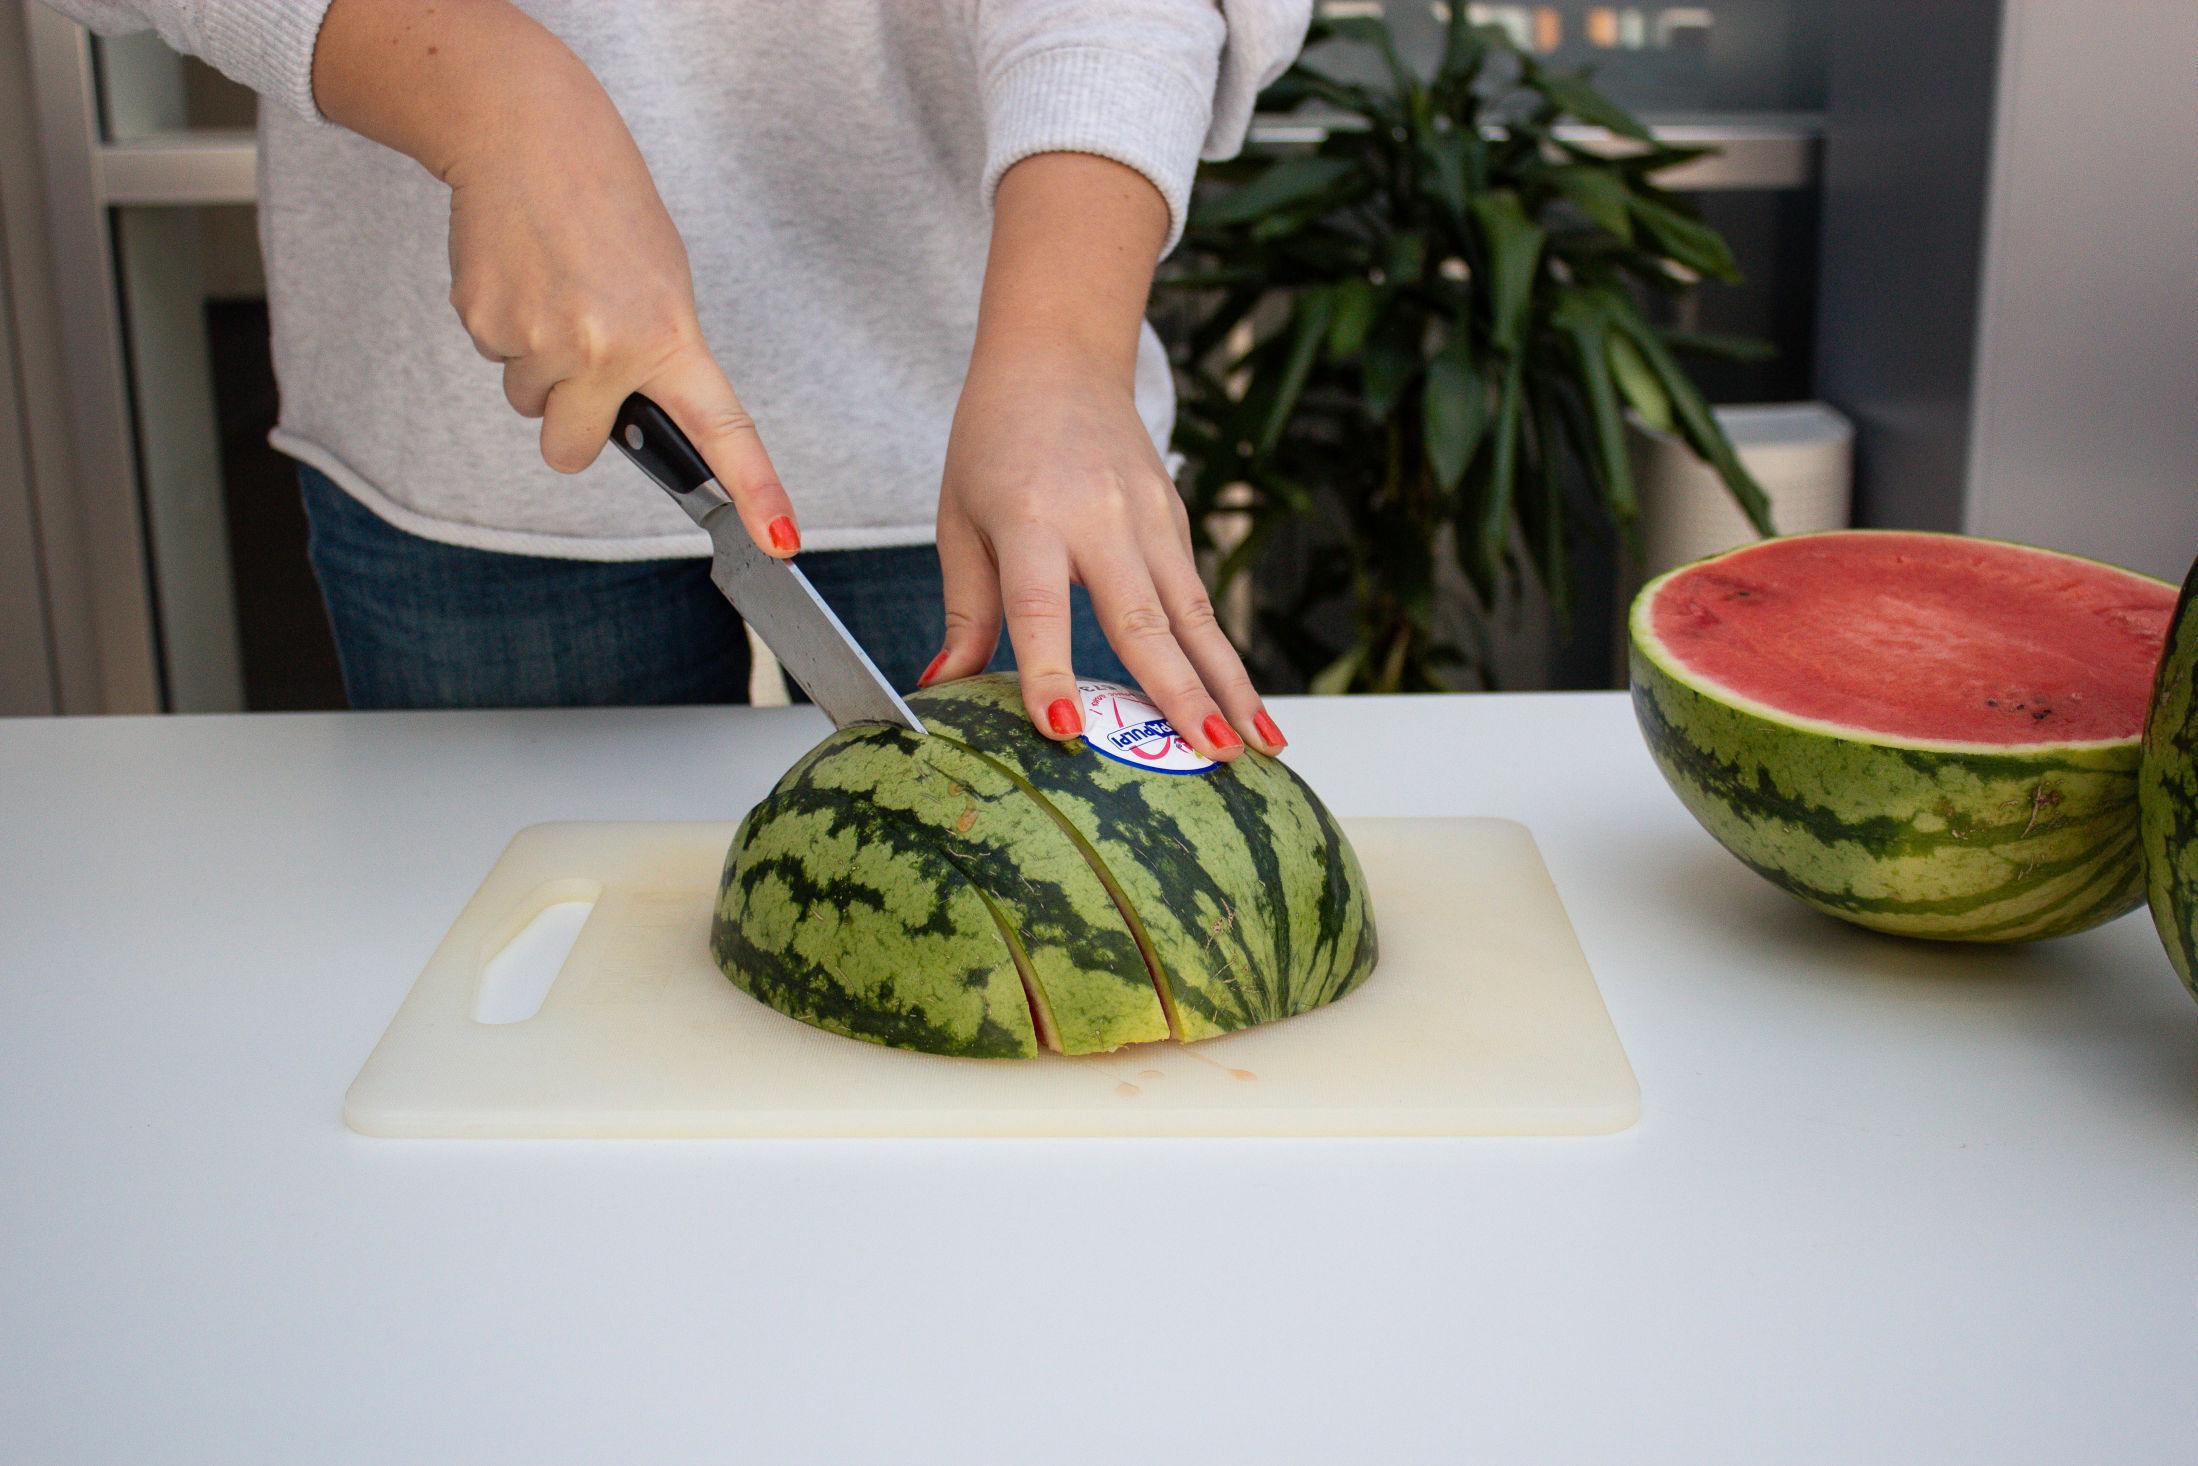 Steg 1: Kjøp en halv vannmelon, eller del en hel i to. Legg den ene halvdelen med den flate siden ned mot skjærebrettet. Deretter skjærer du melonen i skiver på langs.